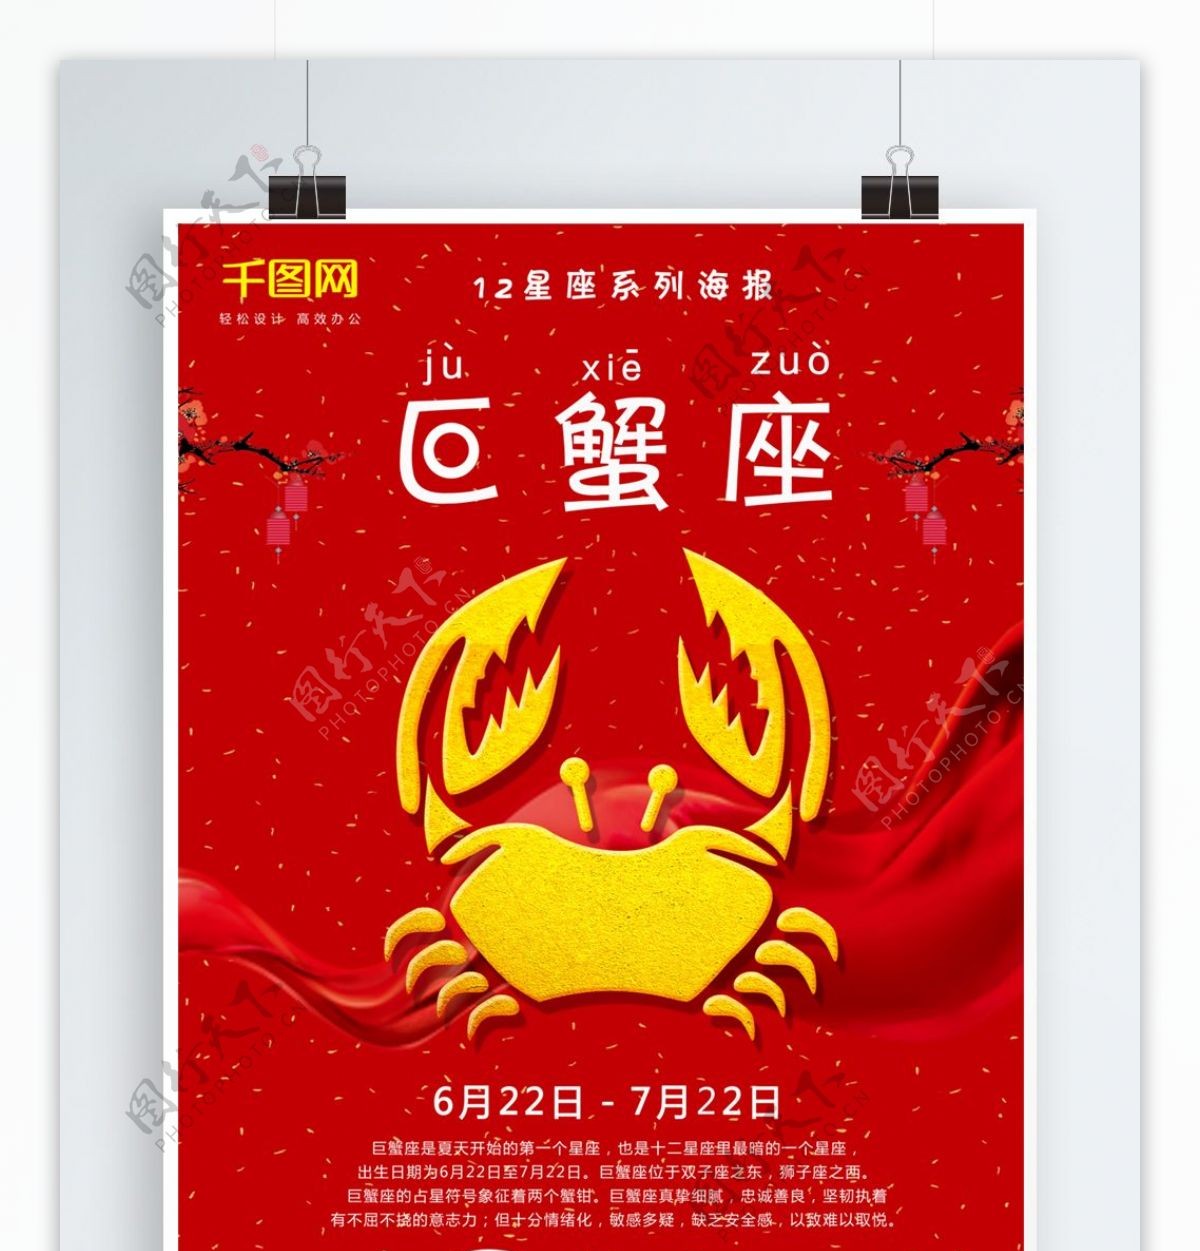 红色简约十二星座系列之一巨蟹座海报